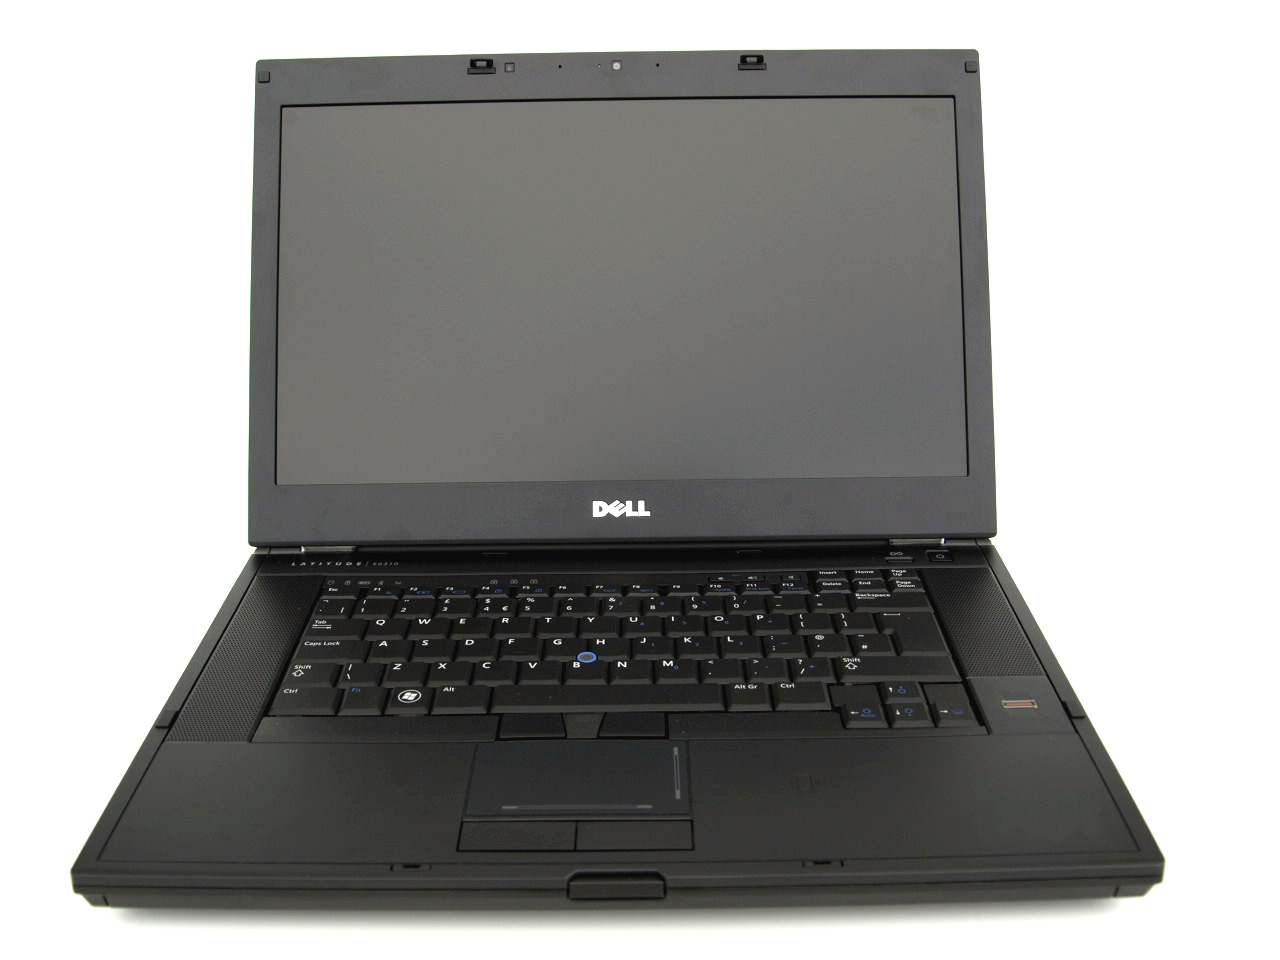 Laptop DELL Latitude E6510, Intel Core i5-540M 2.53GHz, 4GB DDR3, 500GB SATA, DVD-RW, 15.6 Inch, Fara Webcam